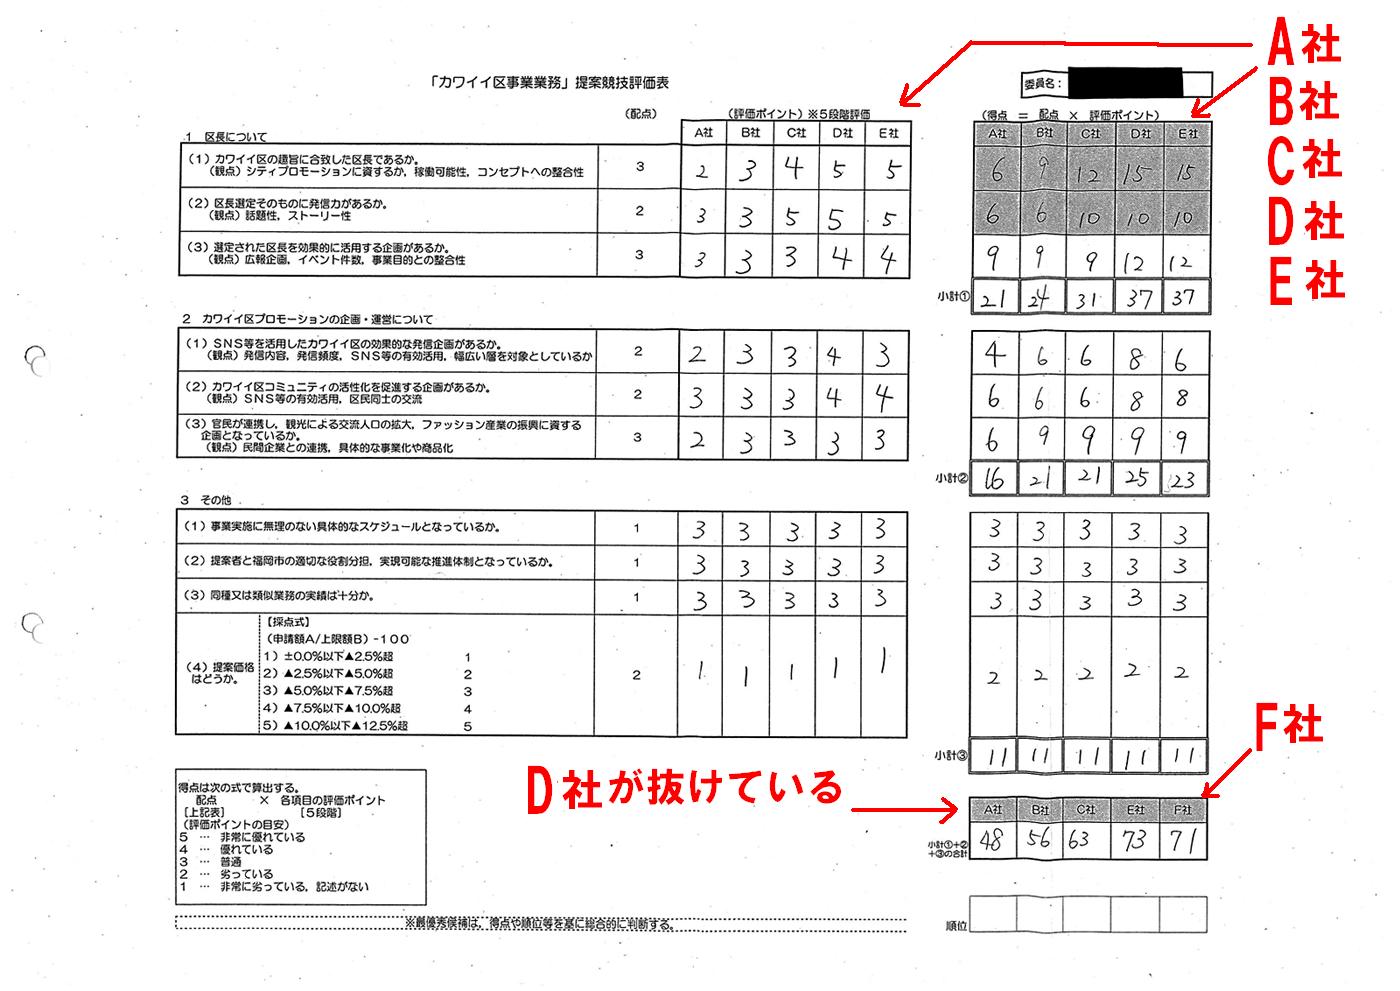 http://hunter-investigate.jp/news/2014/03/24/20140325_h01-01.jpg